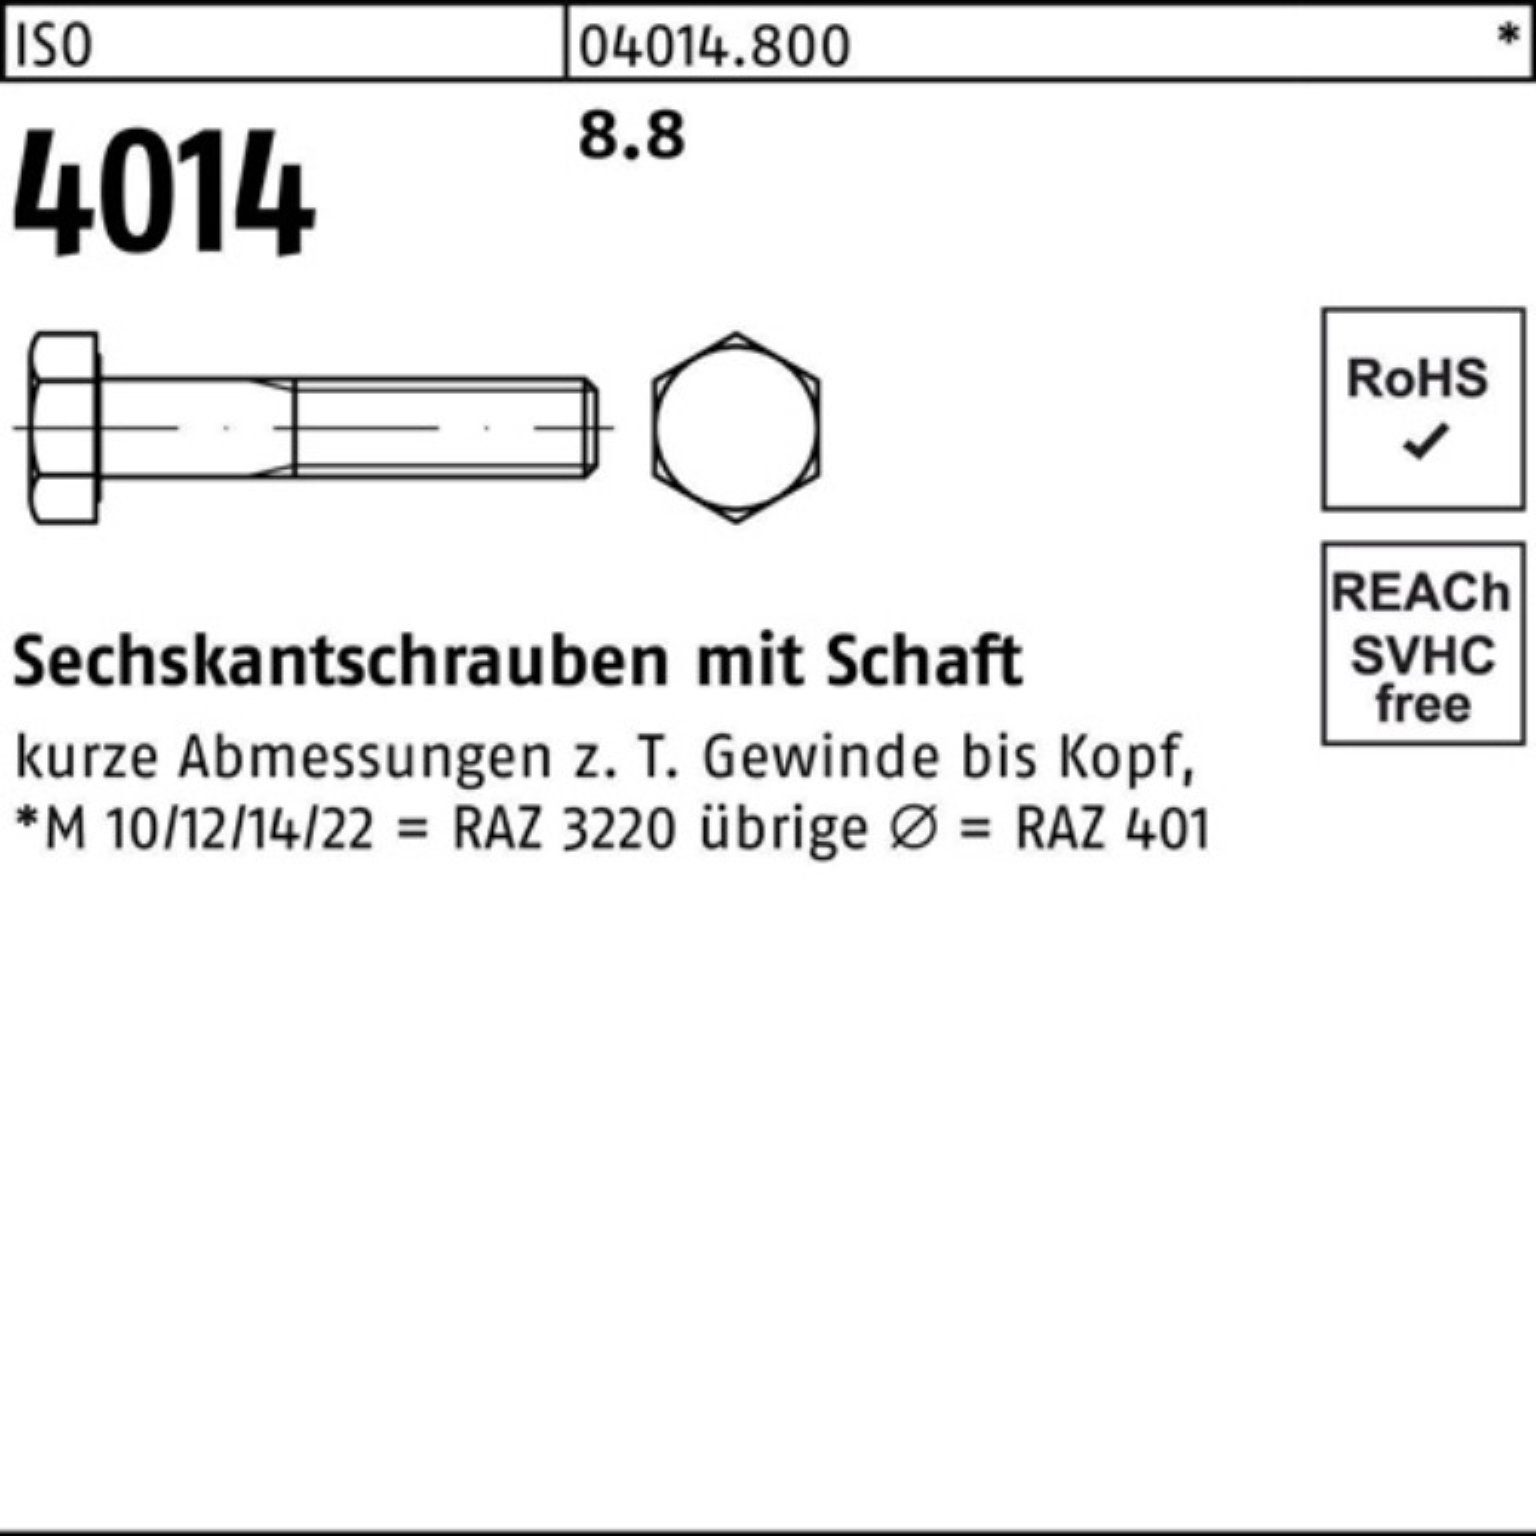 4014 Sechskantschraube Sechskantschraube Bufab ISO 1 Schaft Stück 8.8 100er Pack ISO 380 M30x